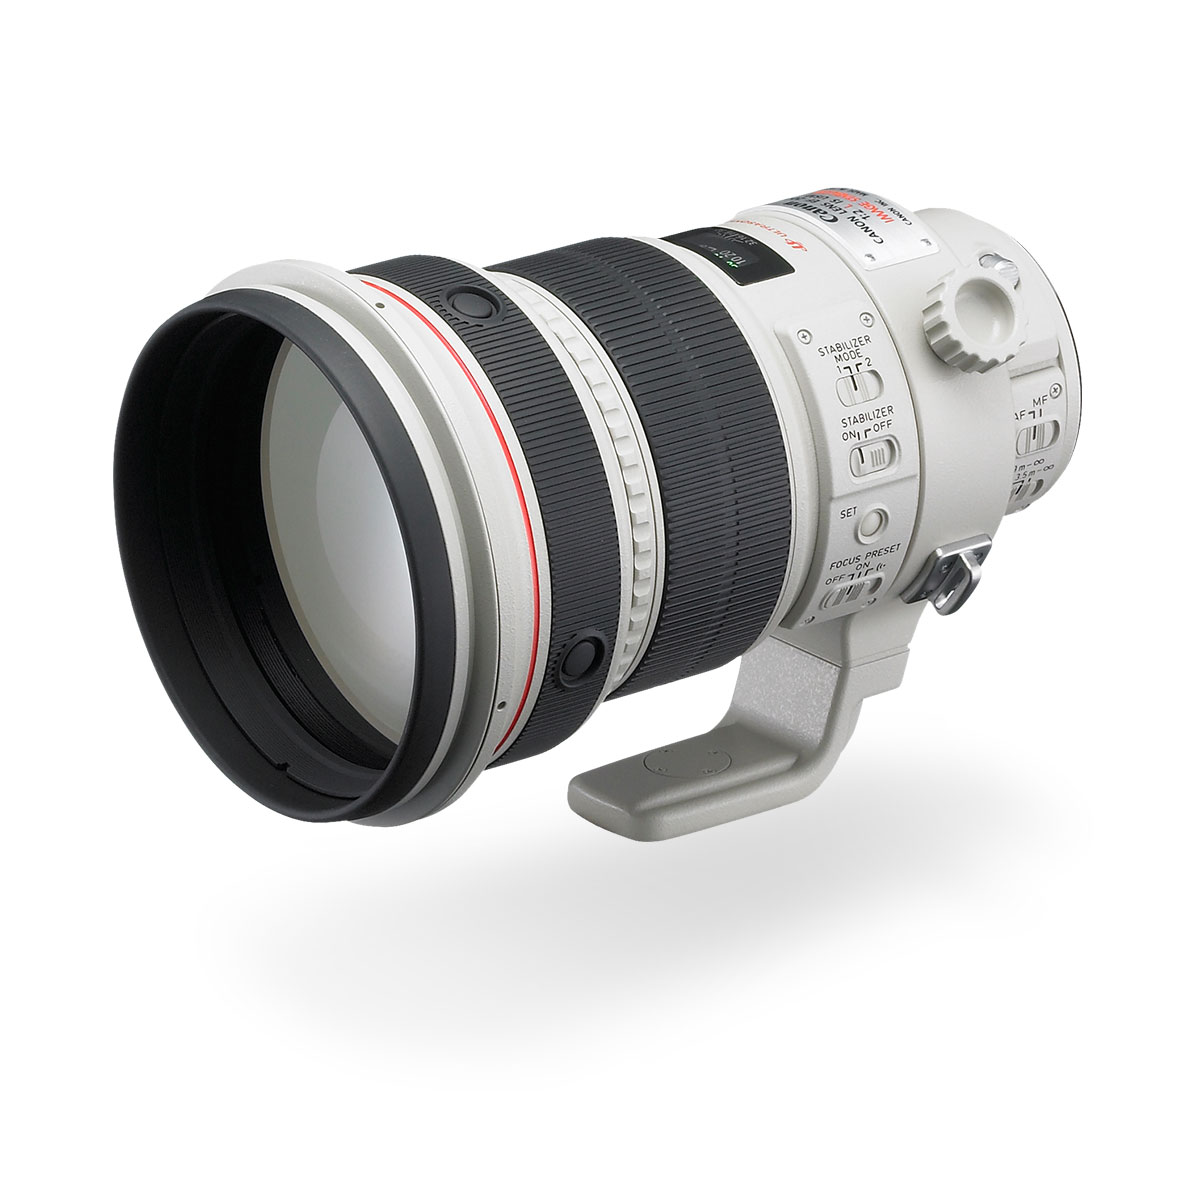 EF 200mm f/2L IS USM lens